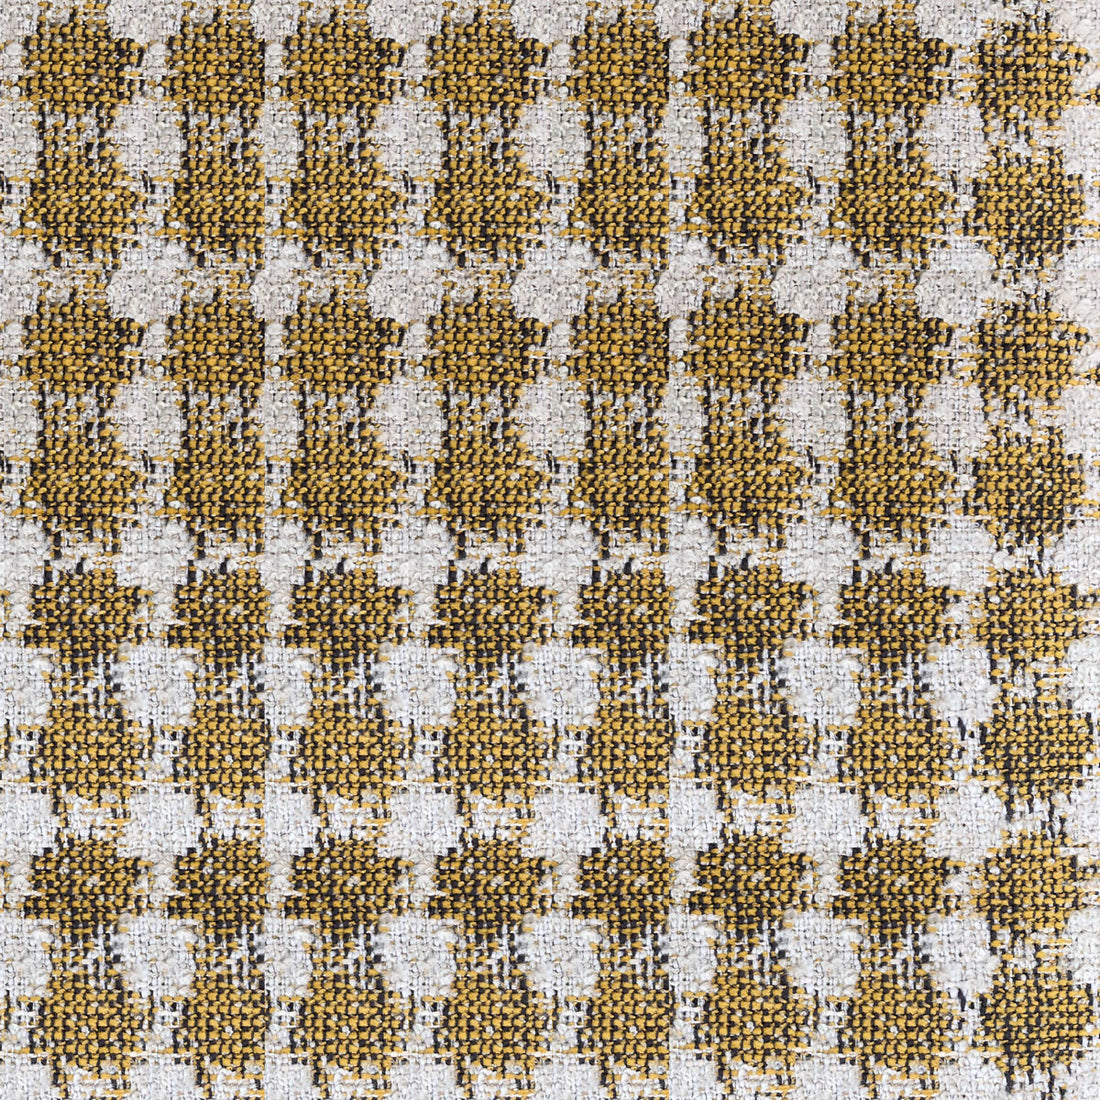 Pedraza fabric in ocre color - pattern LCT1050.004.0 - by Gaston y Daniela in the Lorenzo Castillo VI collection